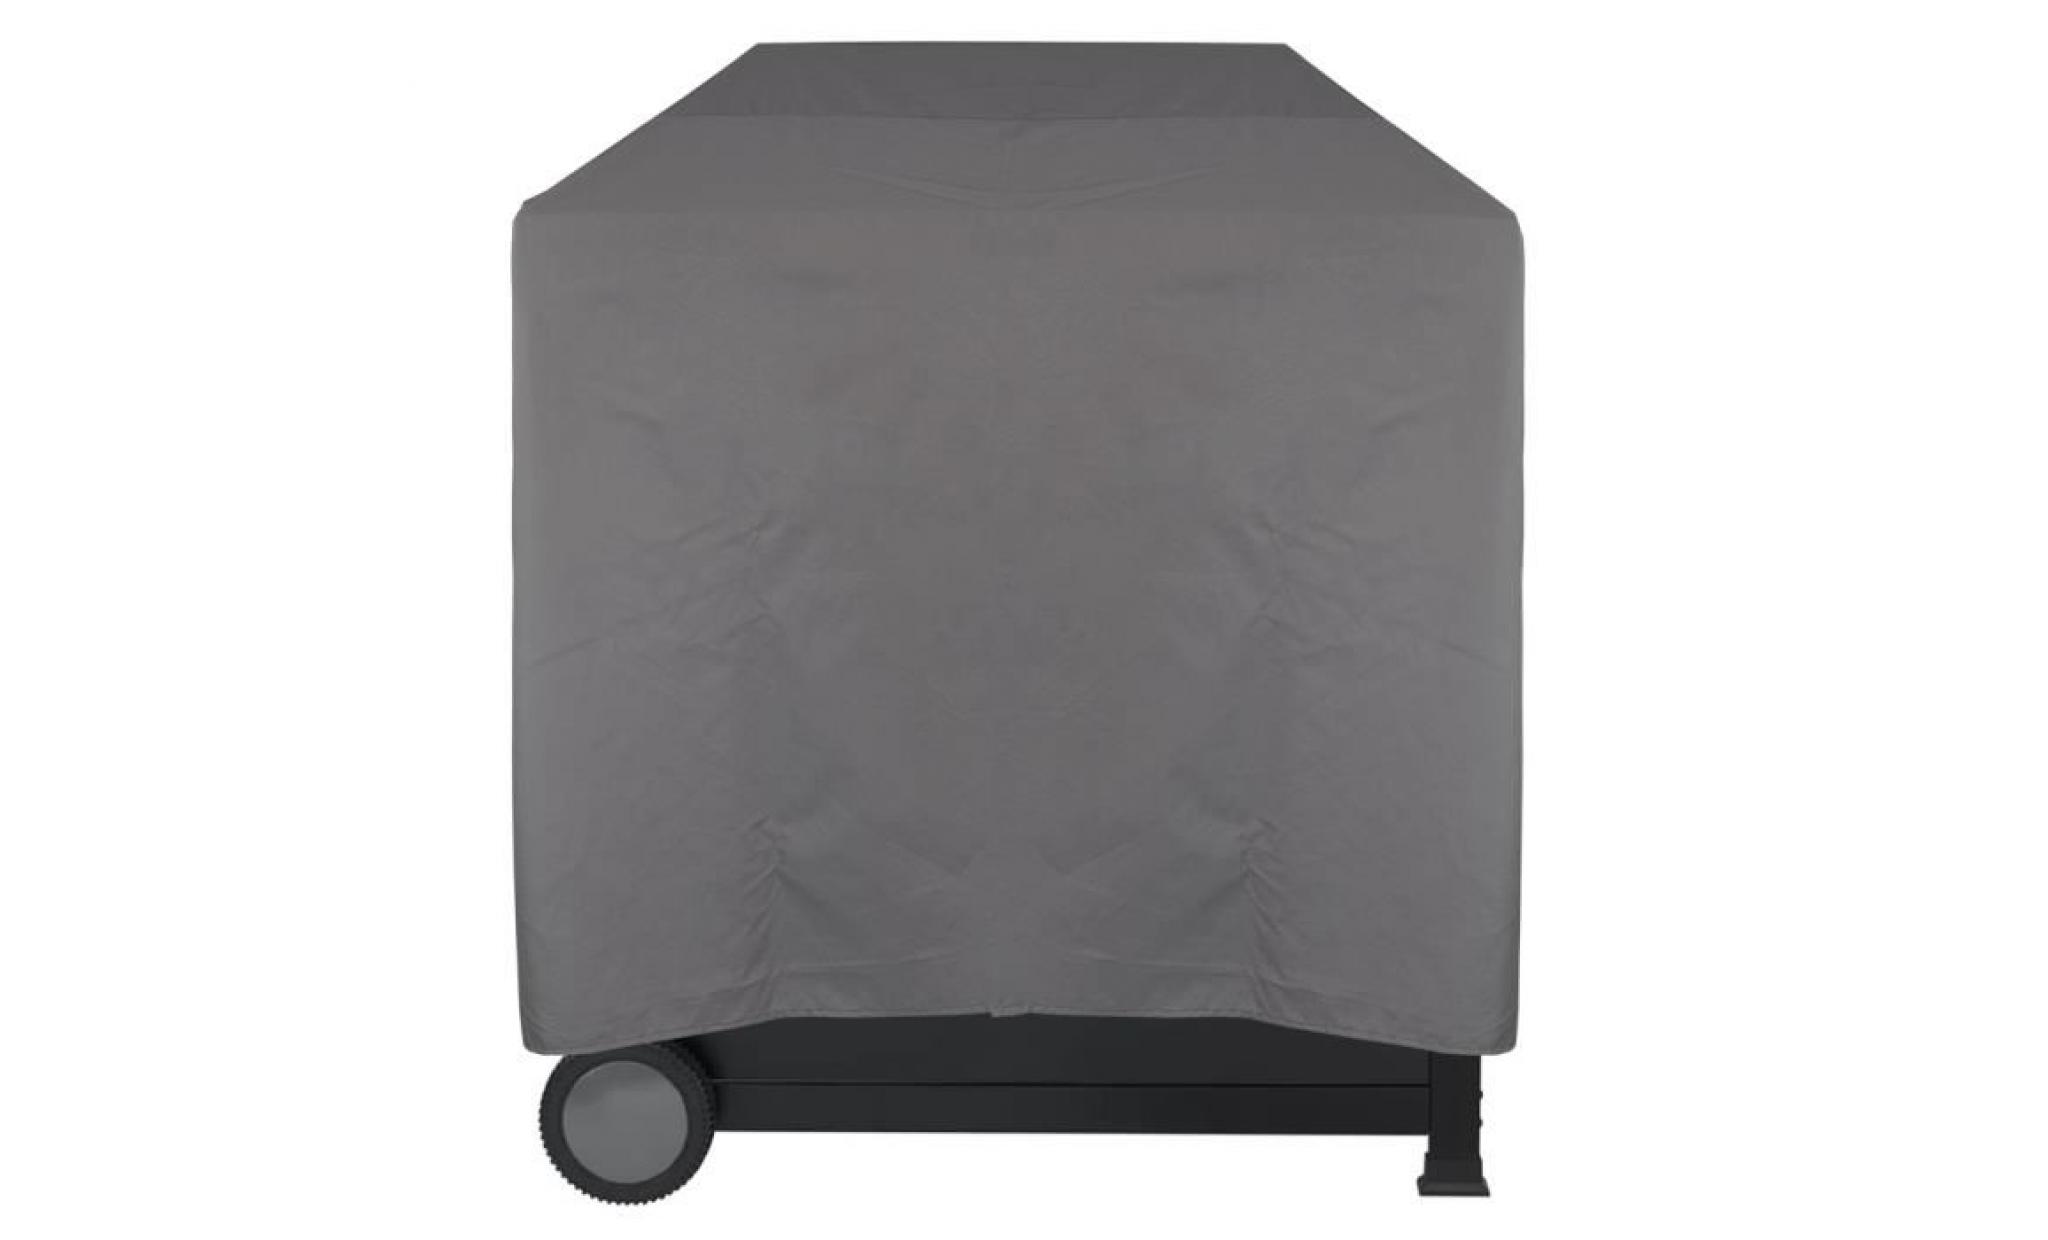 housse pour barbecue imperméable lounge gris, xl 158 x 78 x 120 cm   protège contre la pluie, la saleté et les rayons du soleil